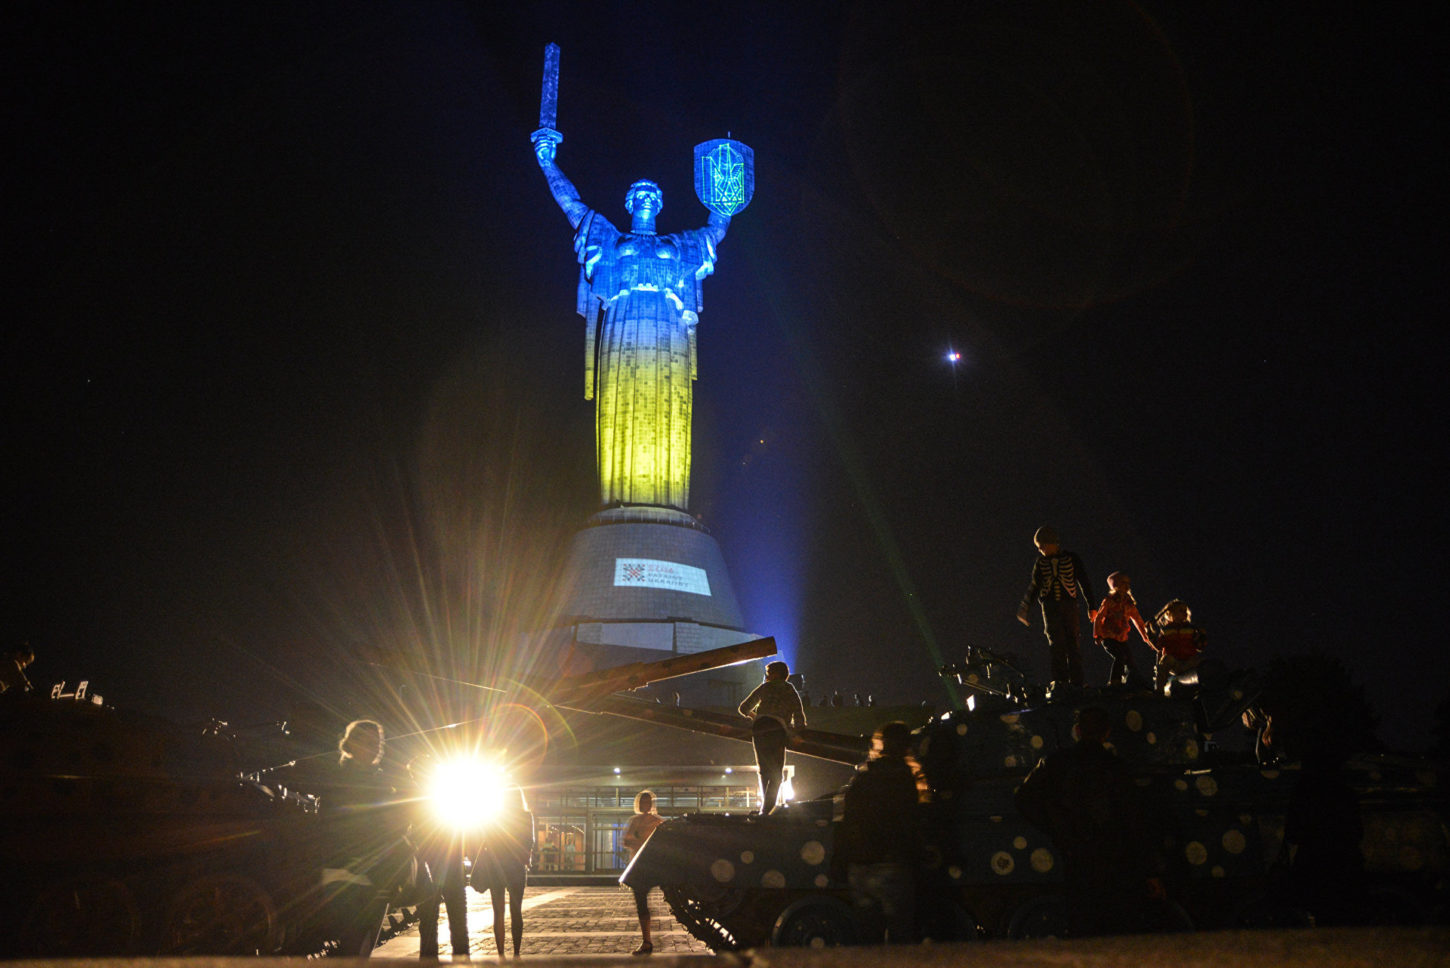 фото подсветки статуи Родина-мать в национальных цветах Украины